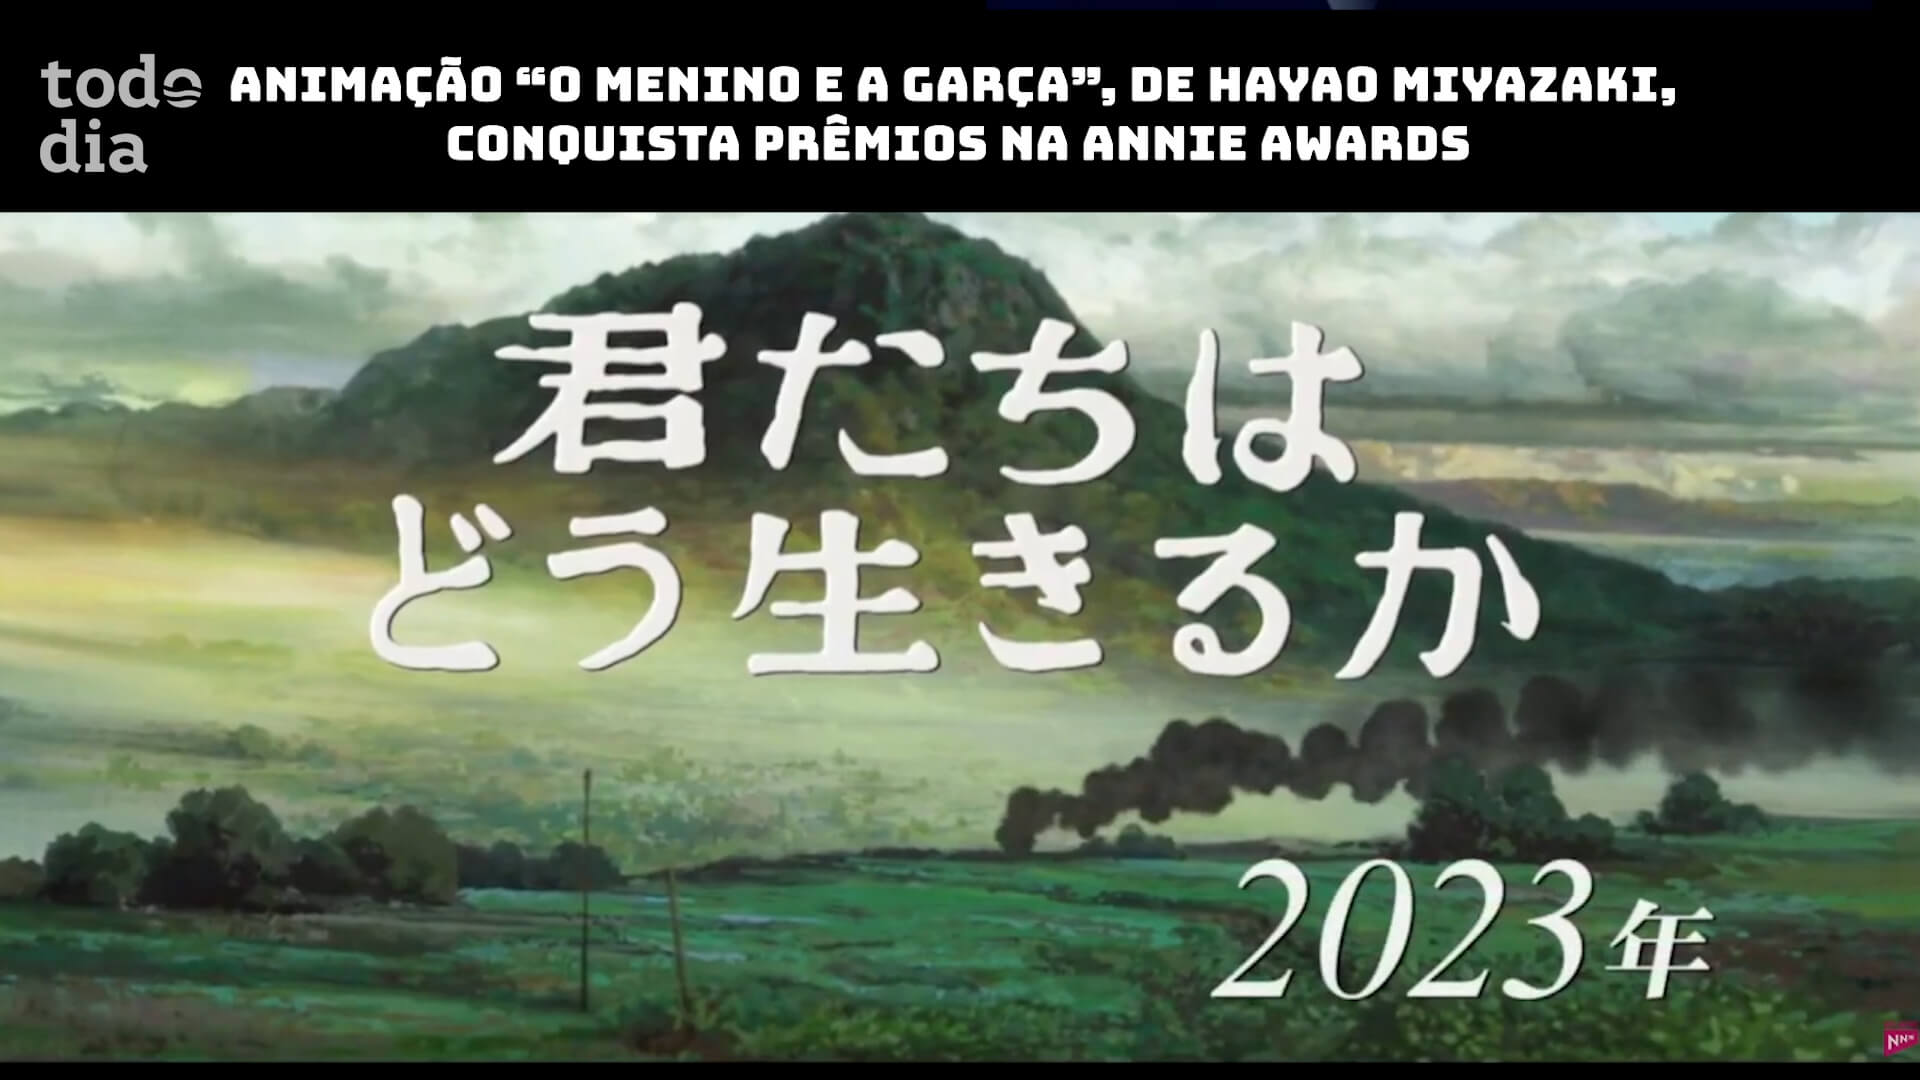 Animação “O Menino e a Garça”, de Hayao Miyazaki, conquista prêmios na Annie Awards